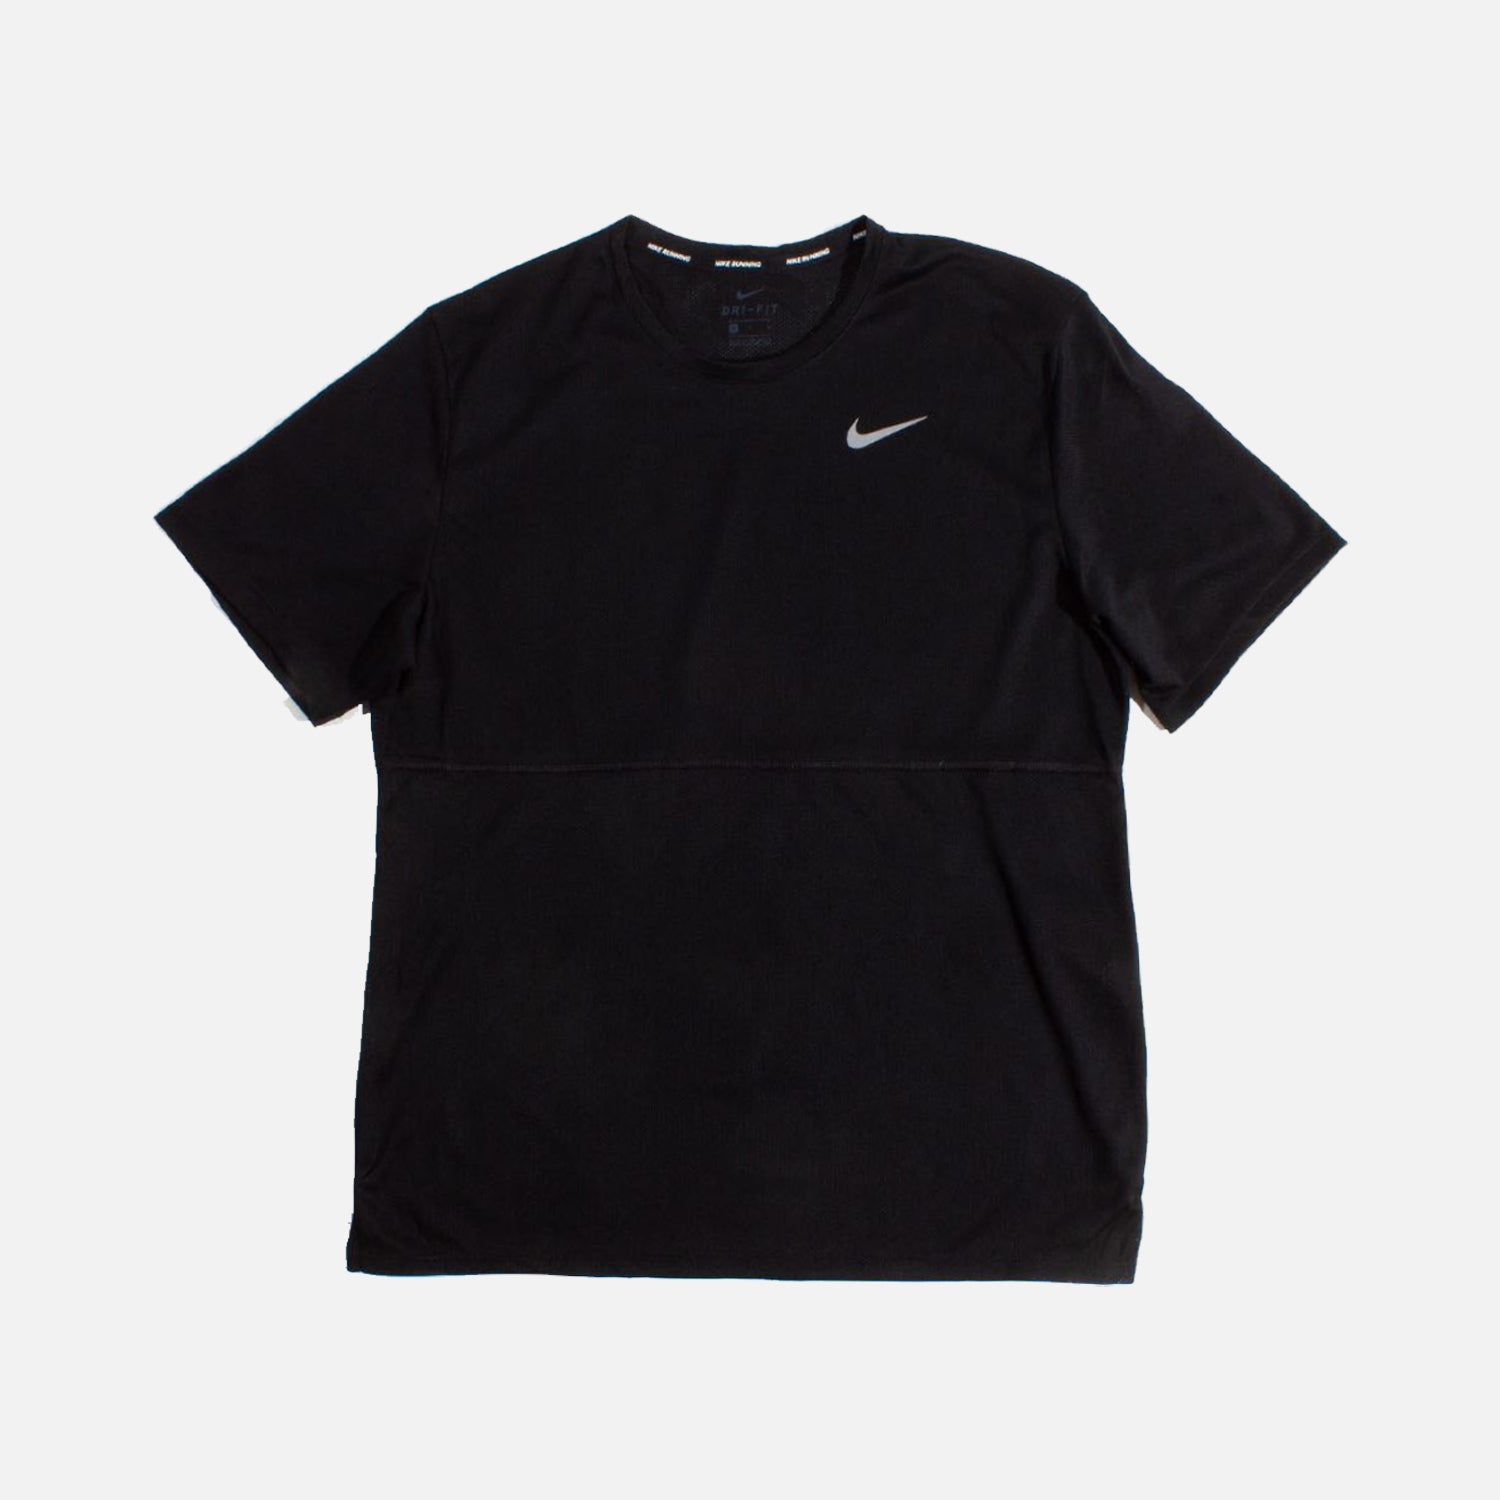 Nike Dri Fit Breathe T-Shirt - Black